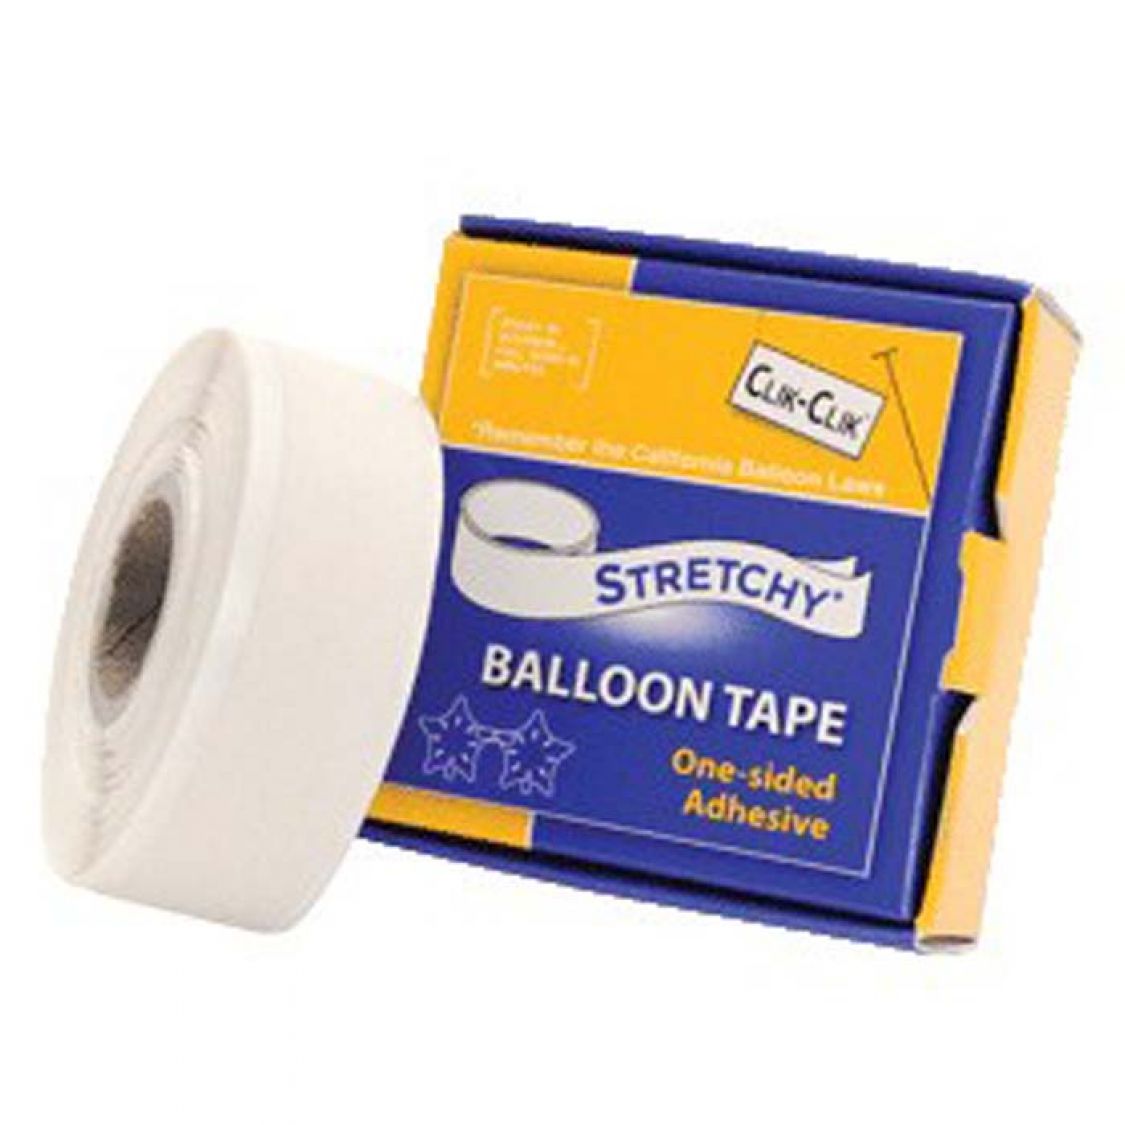 Strechy Balloon Tape